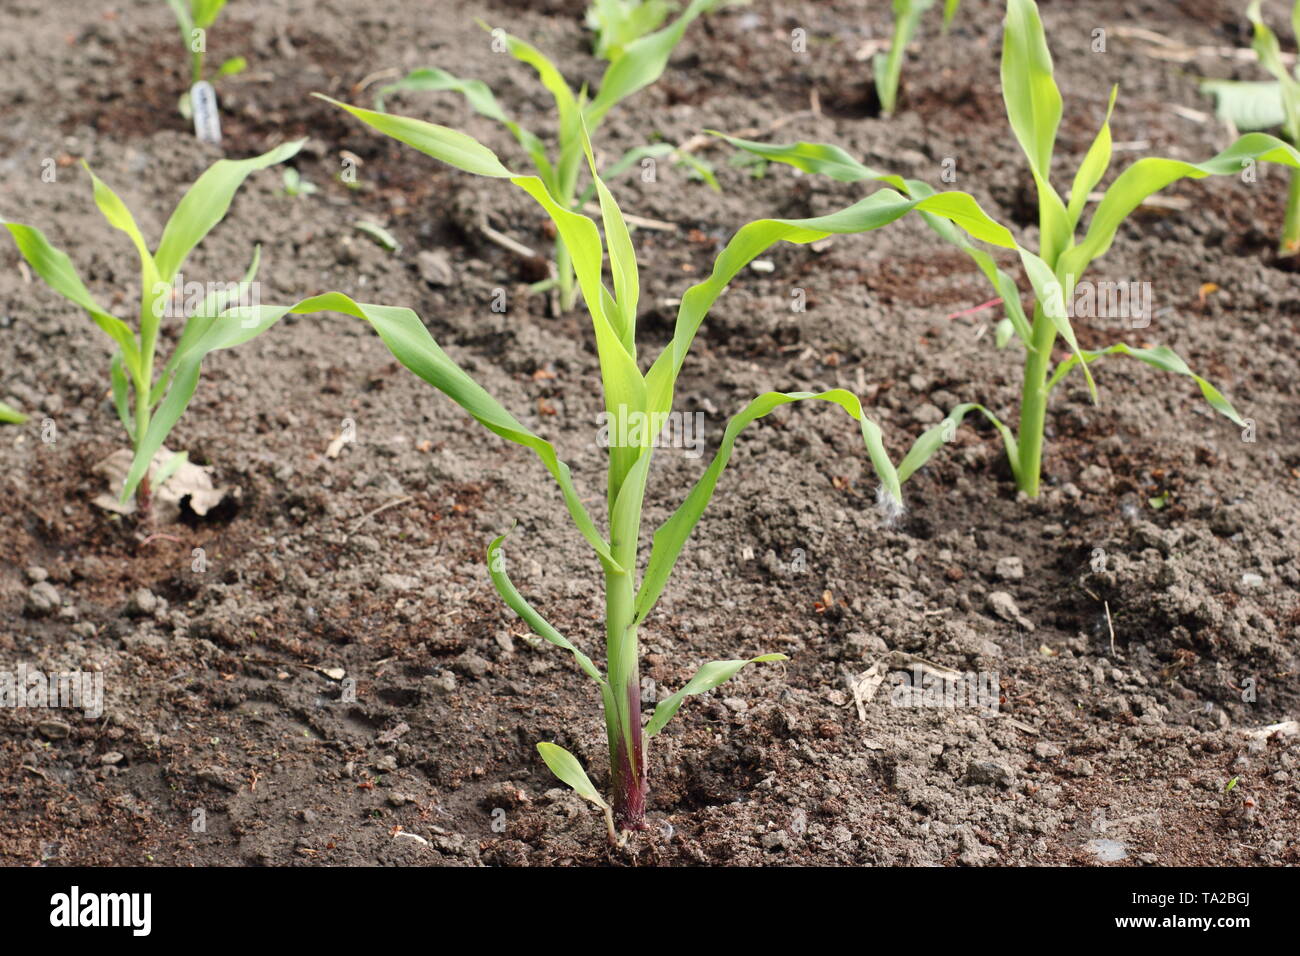 Le maïs. Maïs doux 'jeunes' incroyable F1 plantes poussant dans une grille d'aide à la formation de la pollinisation par le vent - UK potager Banque D'Images